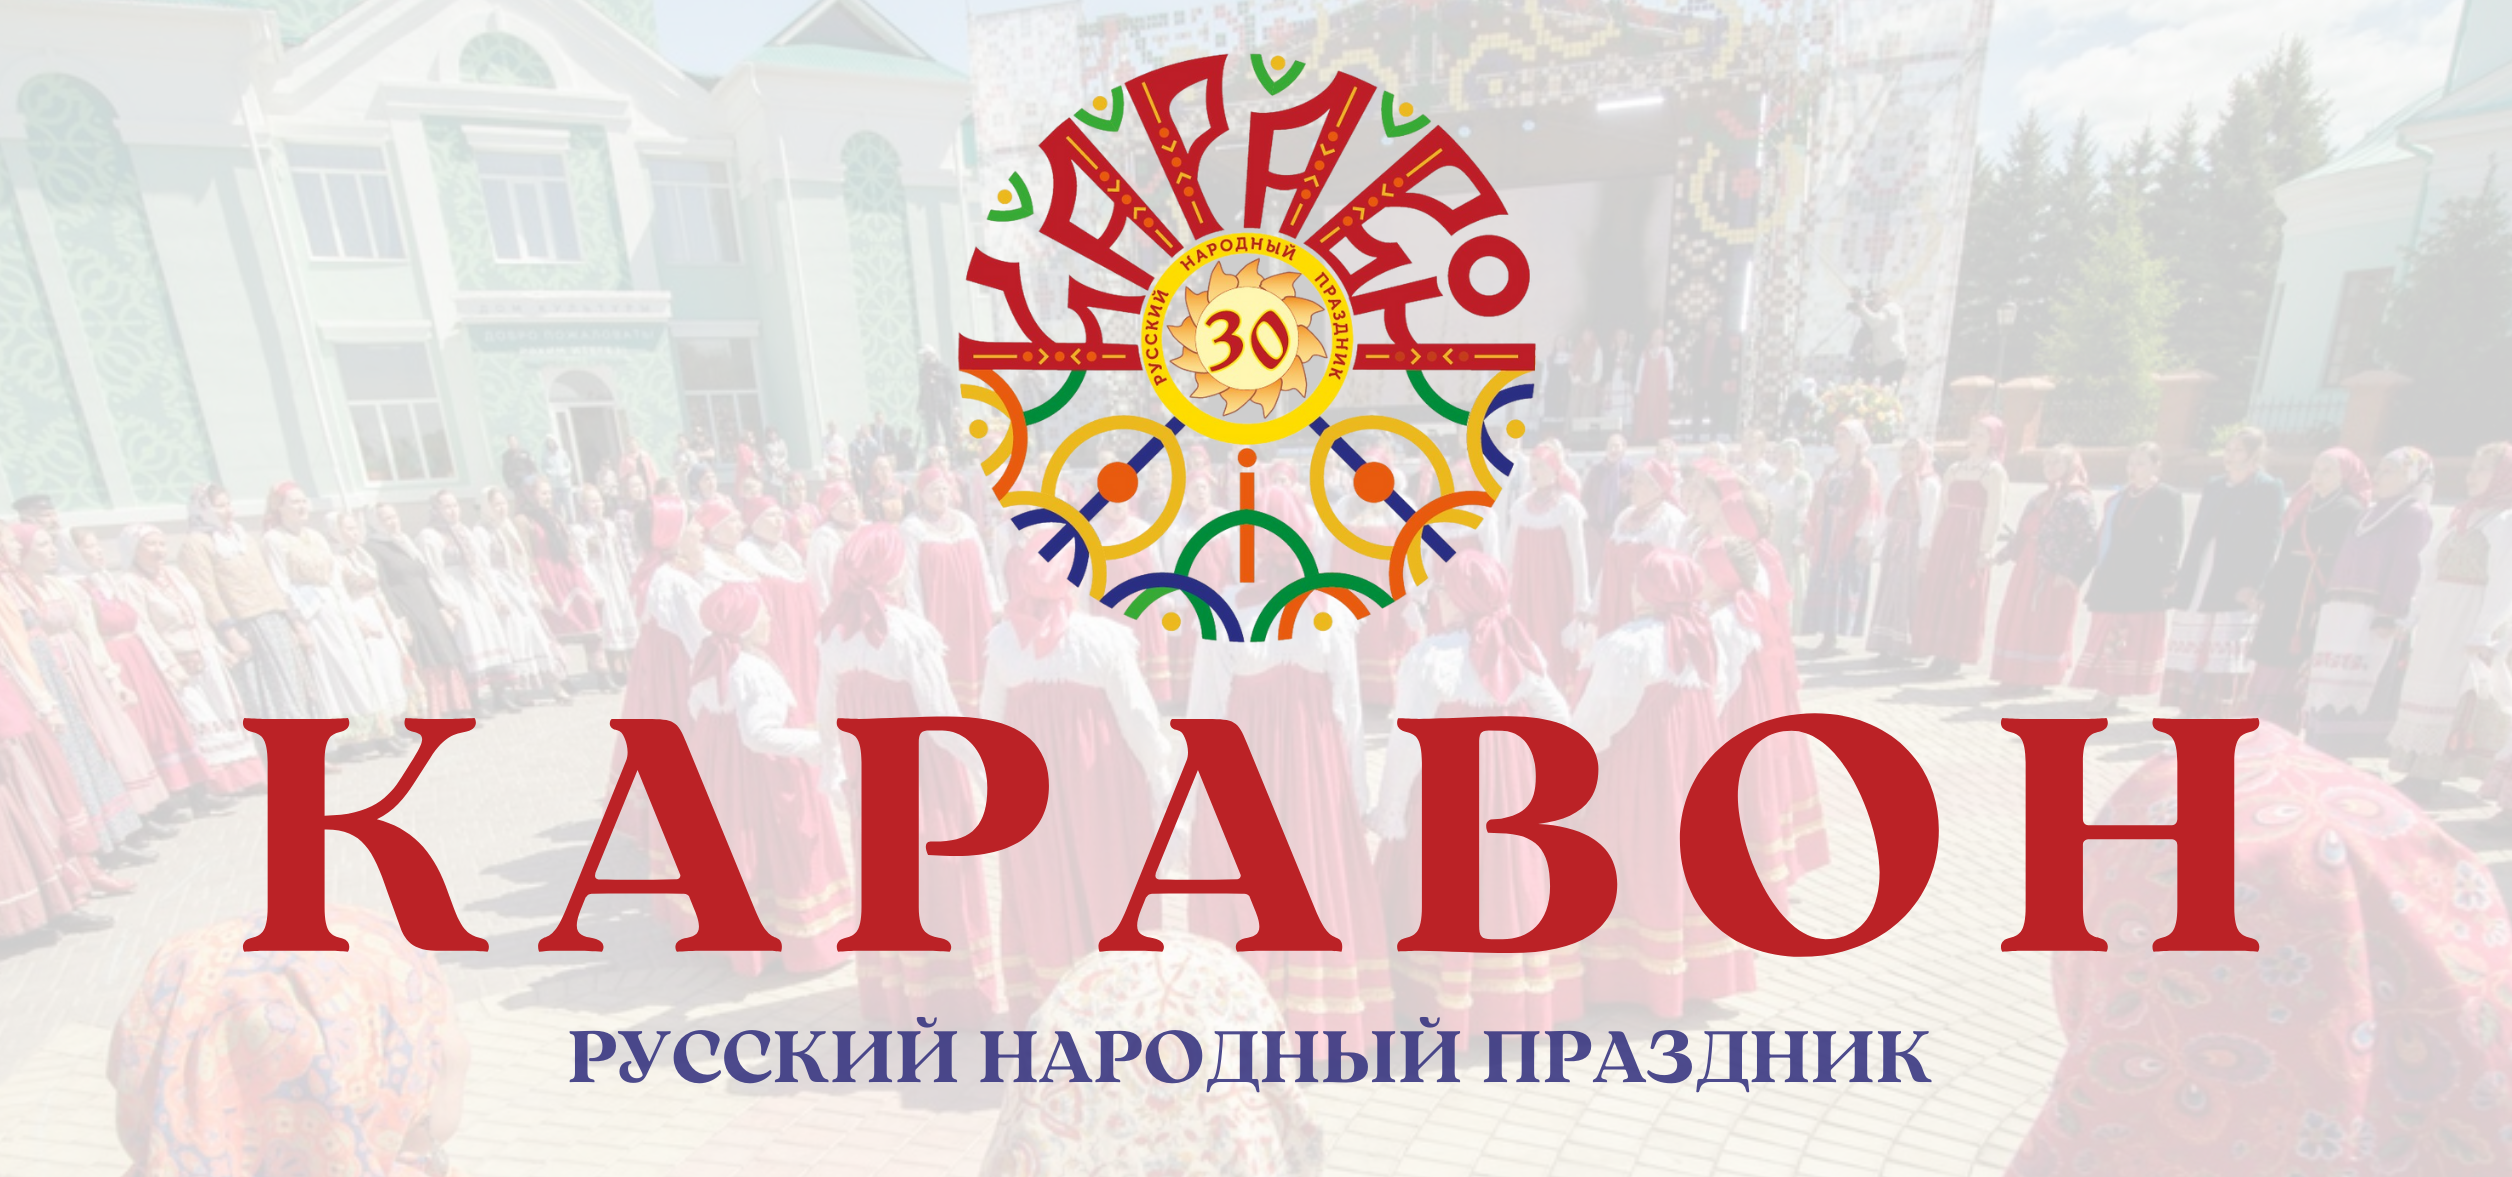 28 мая село Никольское примет юбилейный, тридцатый фестиваль русского фольклора «Каравон»